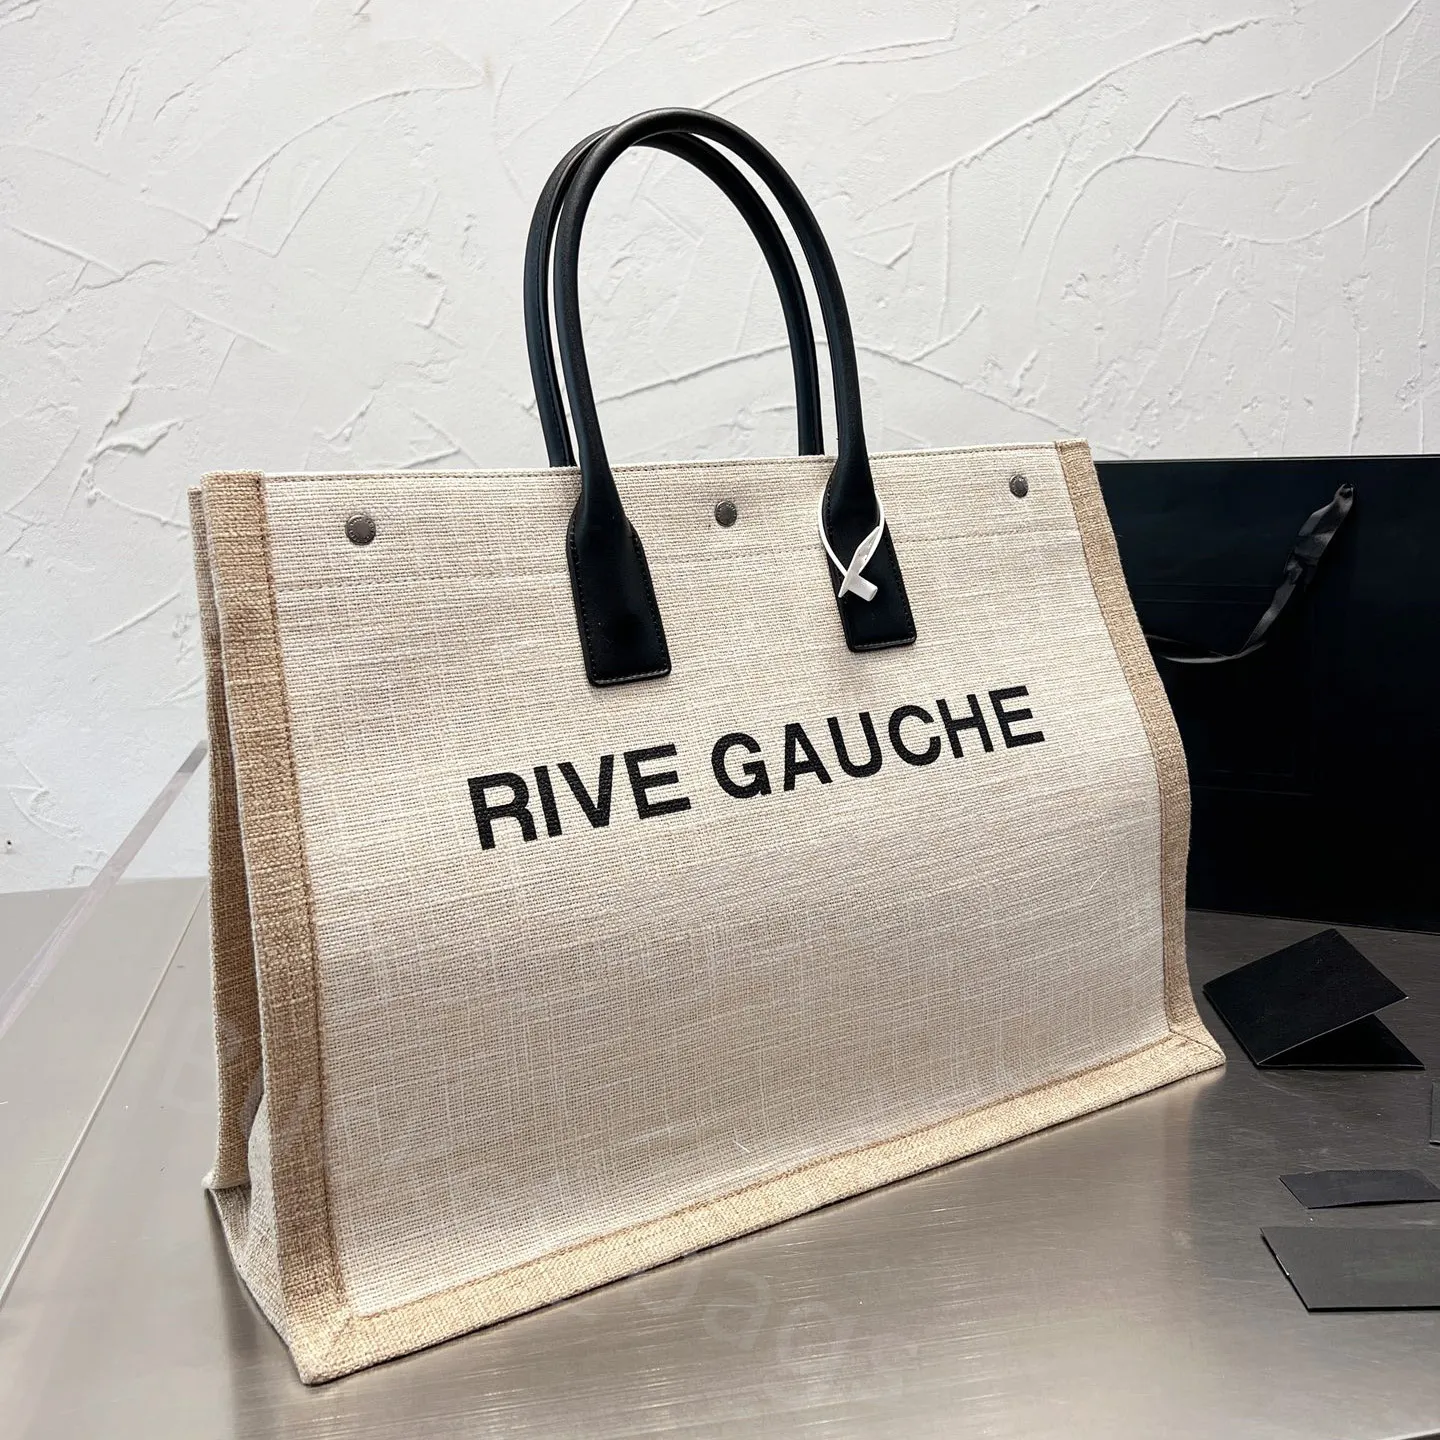 Rive gauche designerka torba lniana płótno totes designerski torebka kobiety plażowe torba na zakupy skórzane uchwyty kieszonkowe ins